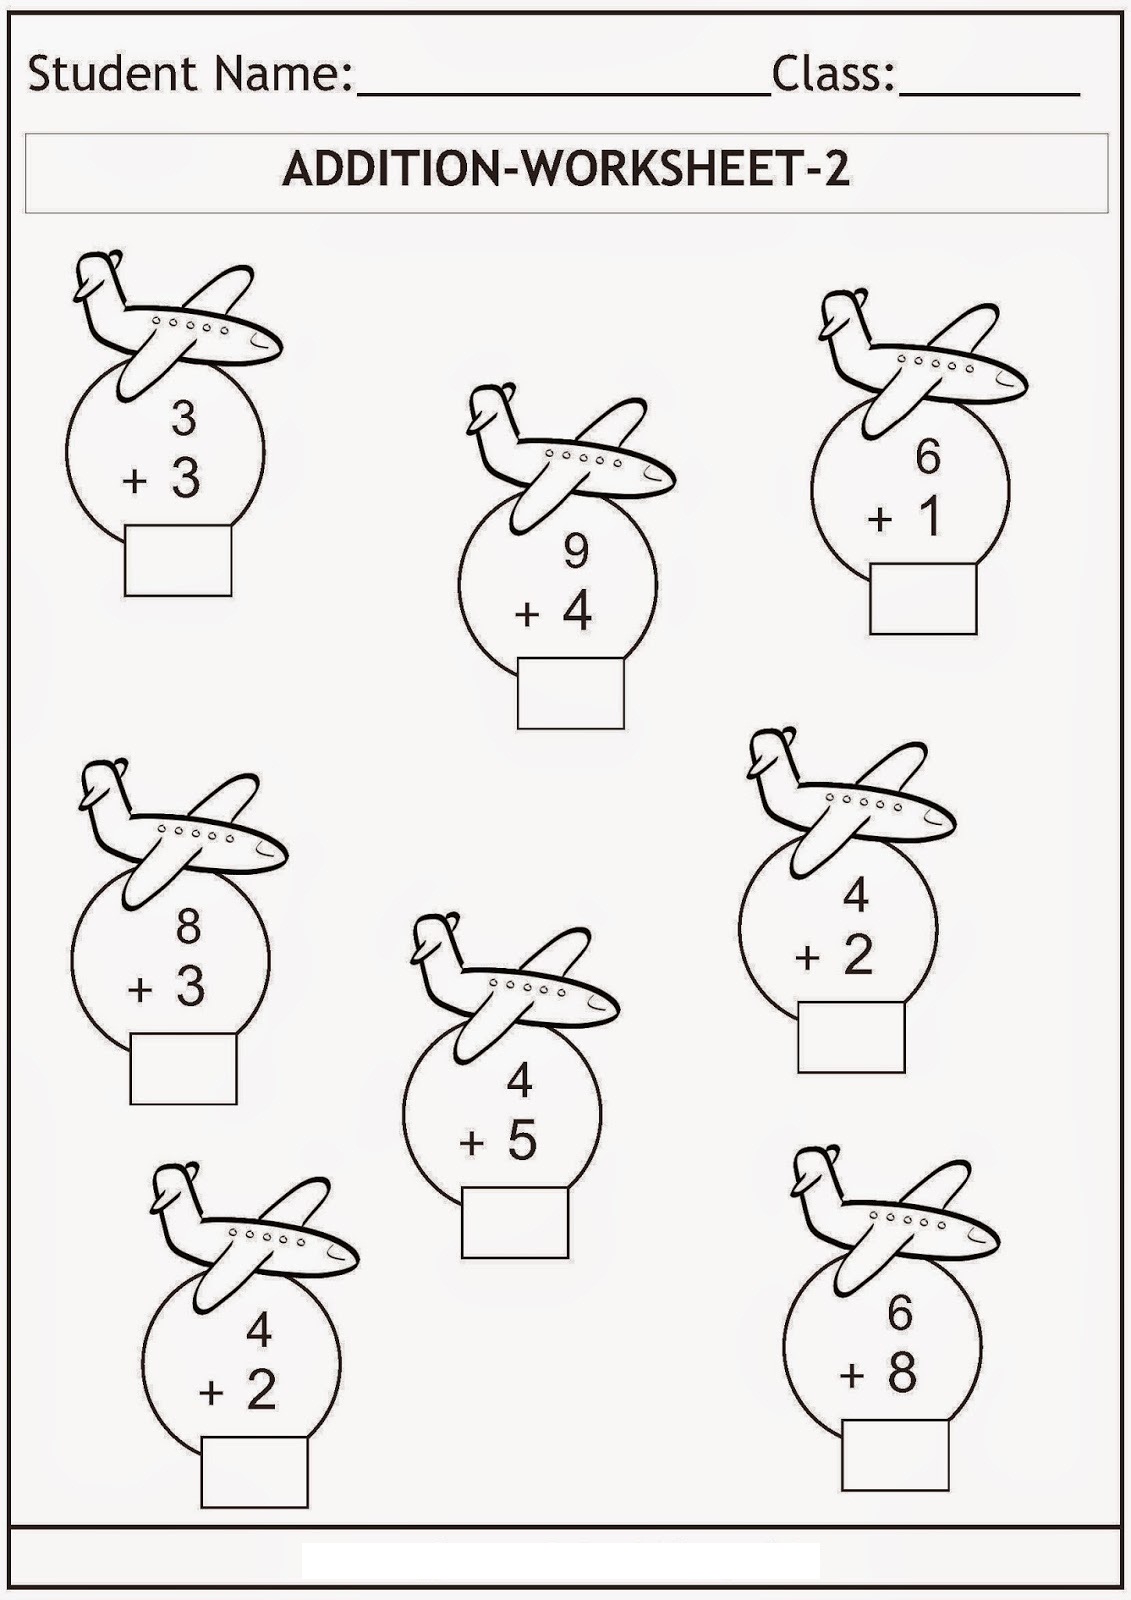 printable-addition-and-subtraction-worksheets-for-kindergarten-worksheets-math-addition-grade